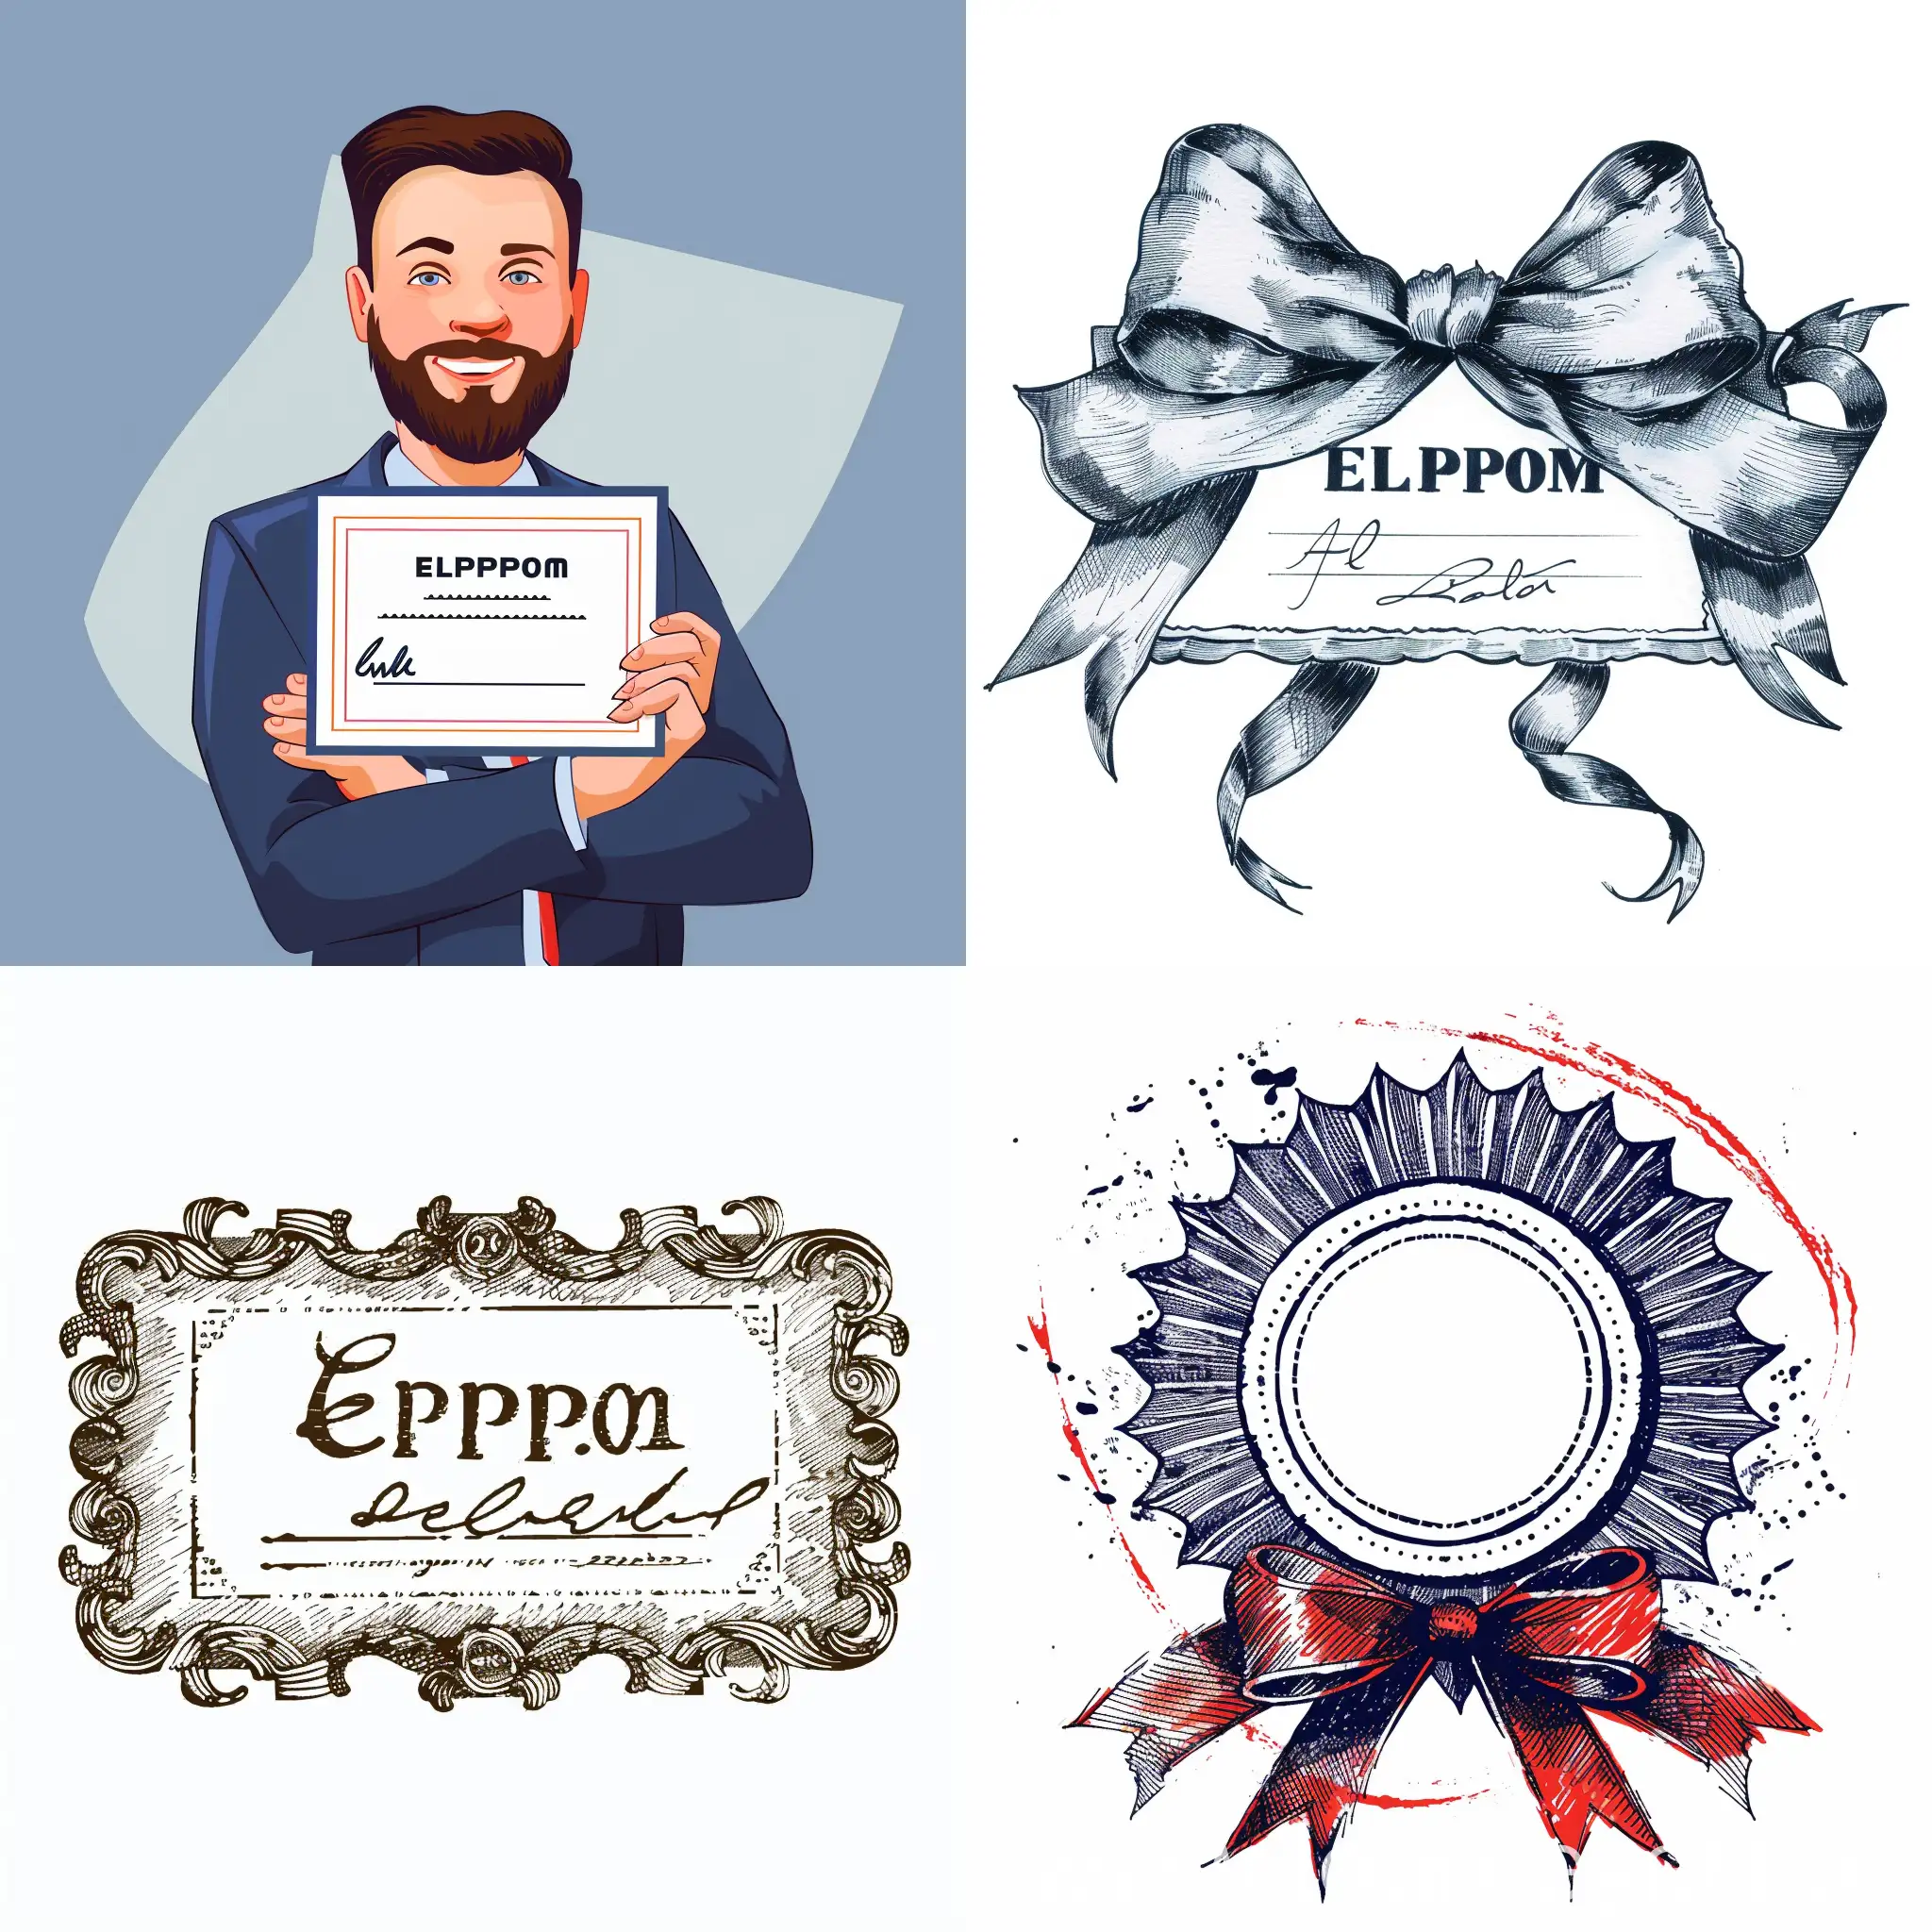 Elprom-Dealer-Certificate-V6